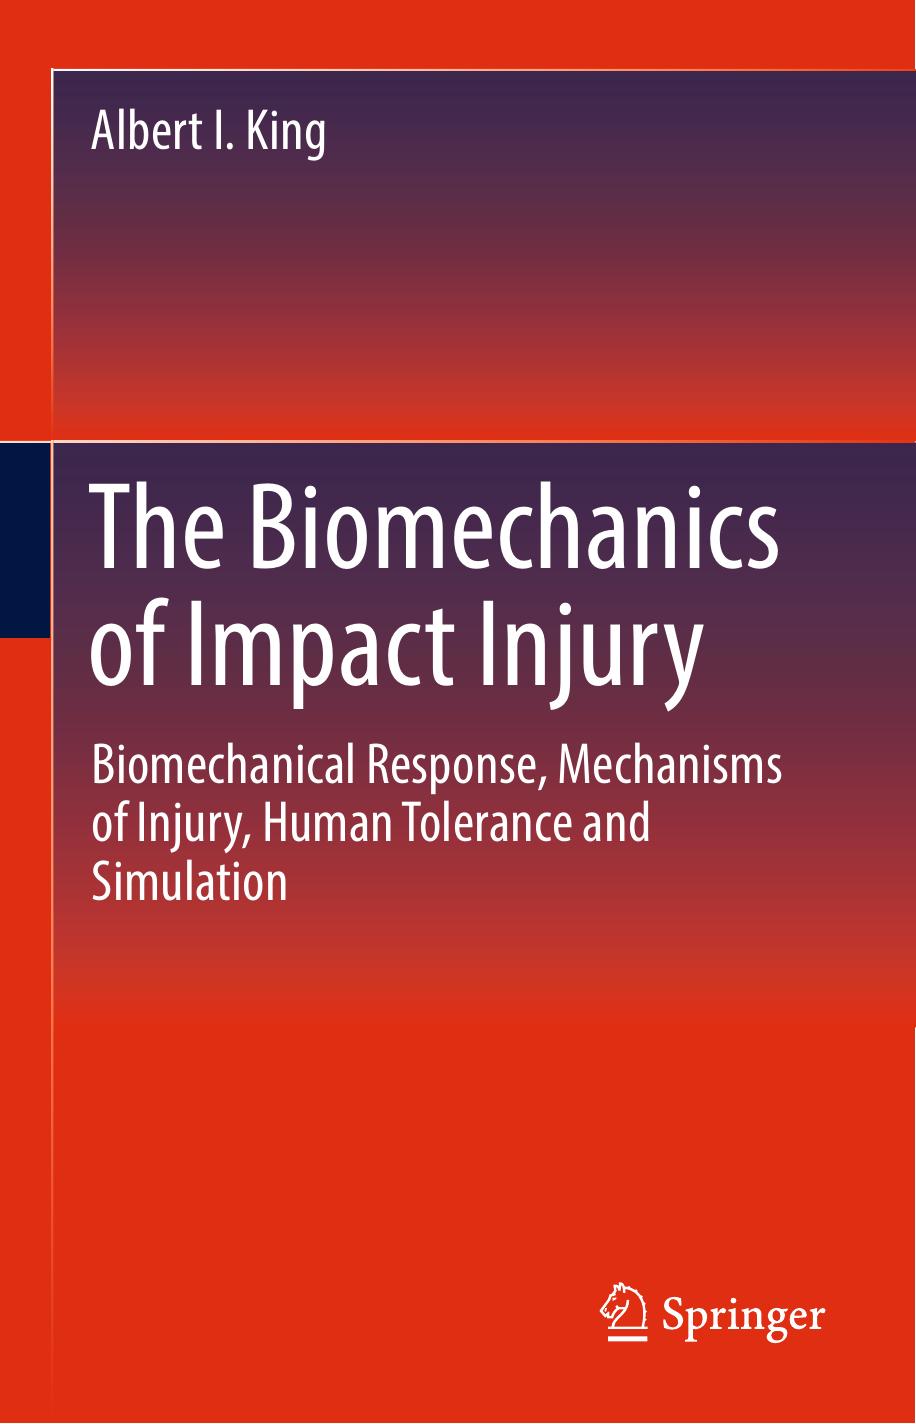 [King, Albert I] The Biomechanics of Impact Injury(b-ok.cc)